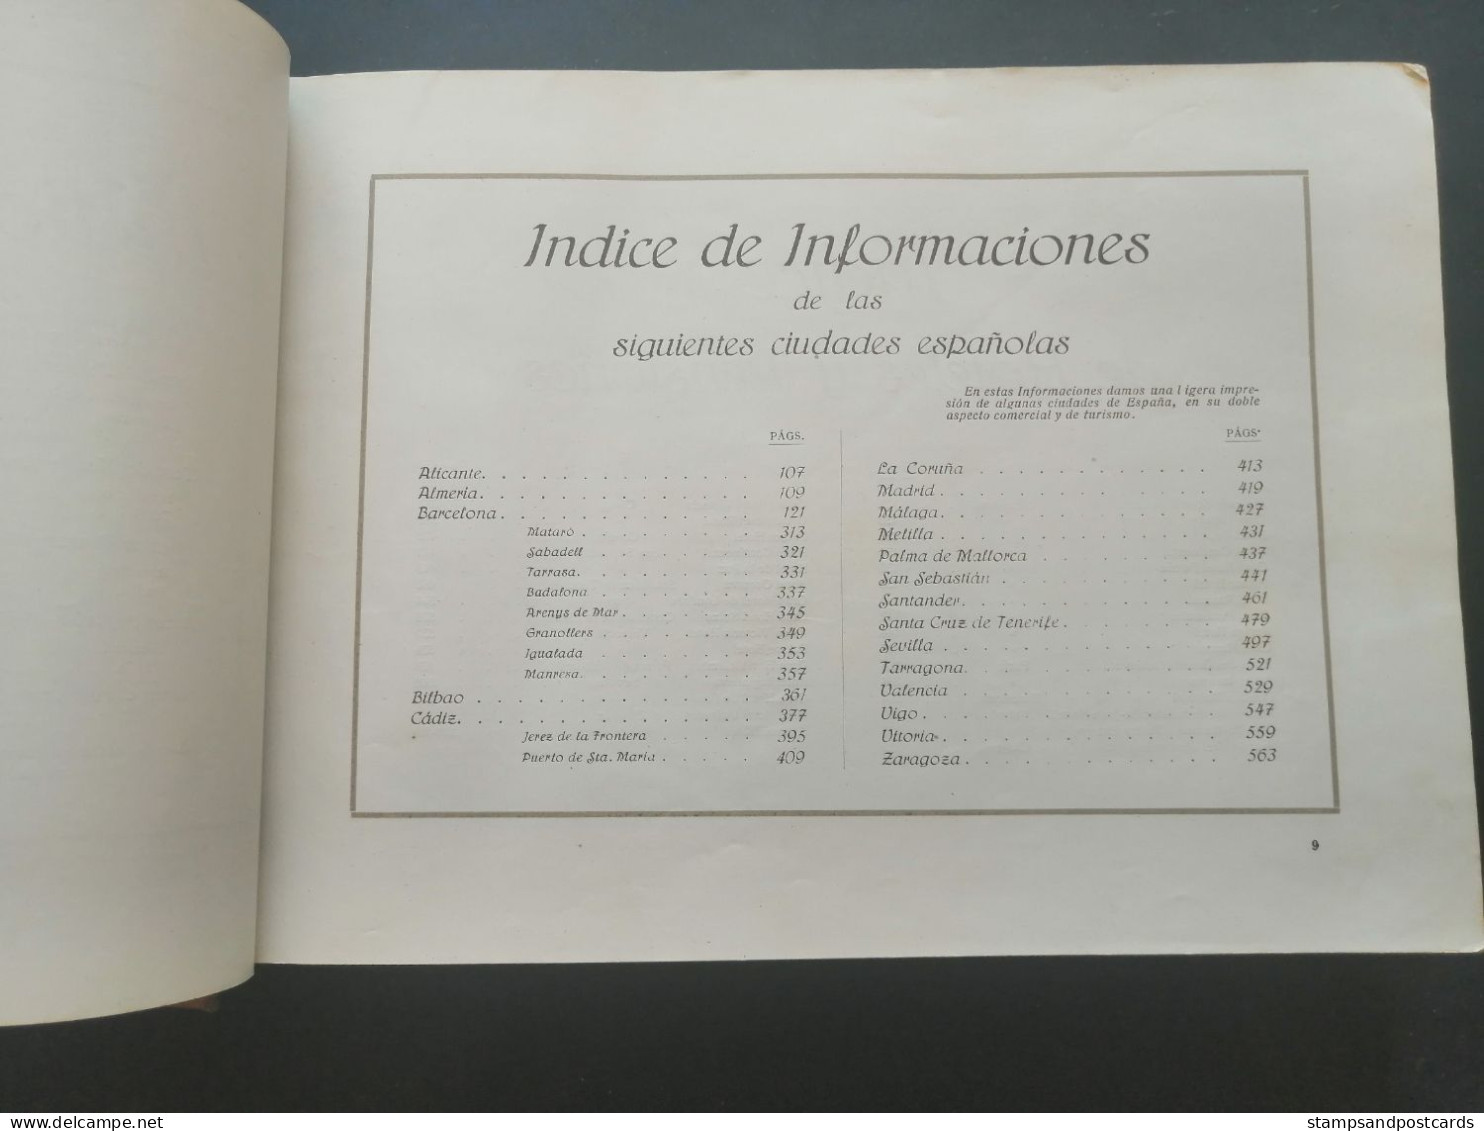 Compañía Trasatlántica Libro De Información 1920 Barcelona Catalonia España Spain Shipping Company Handbook Paquebot - Géographie & Voyages